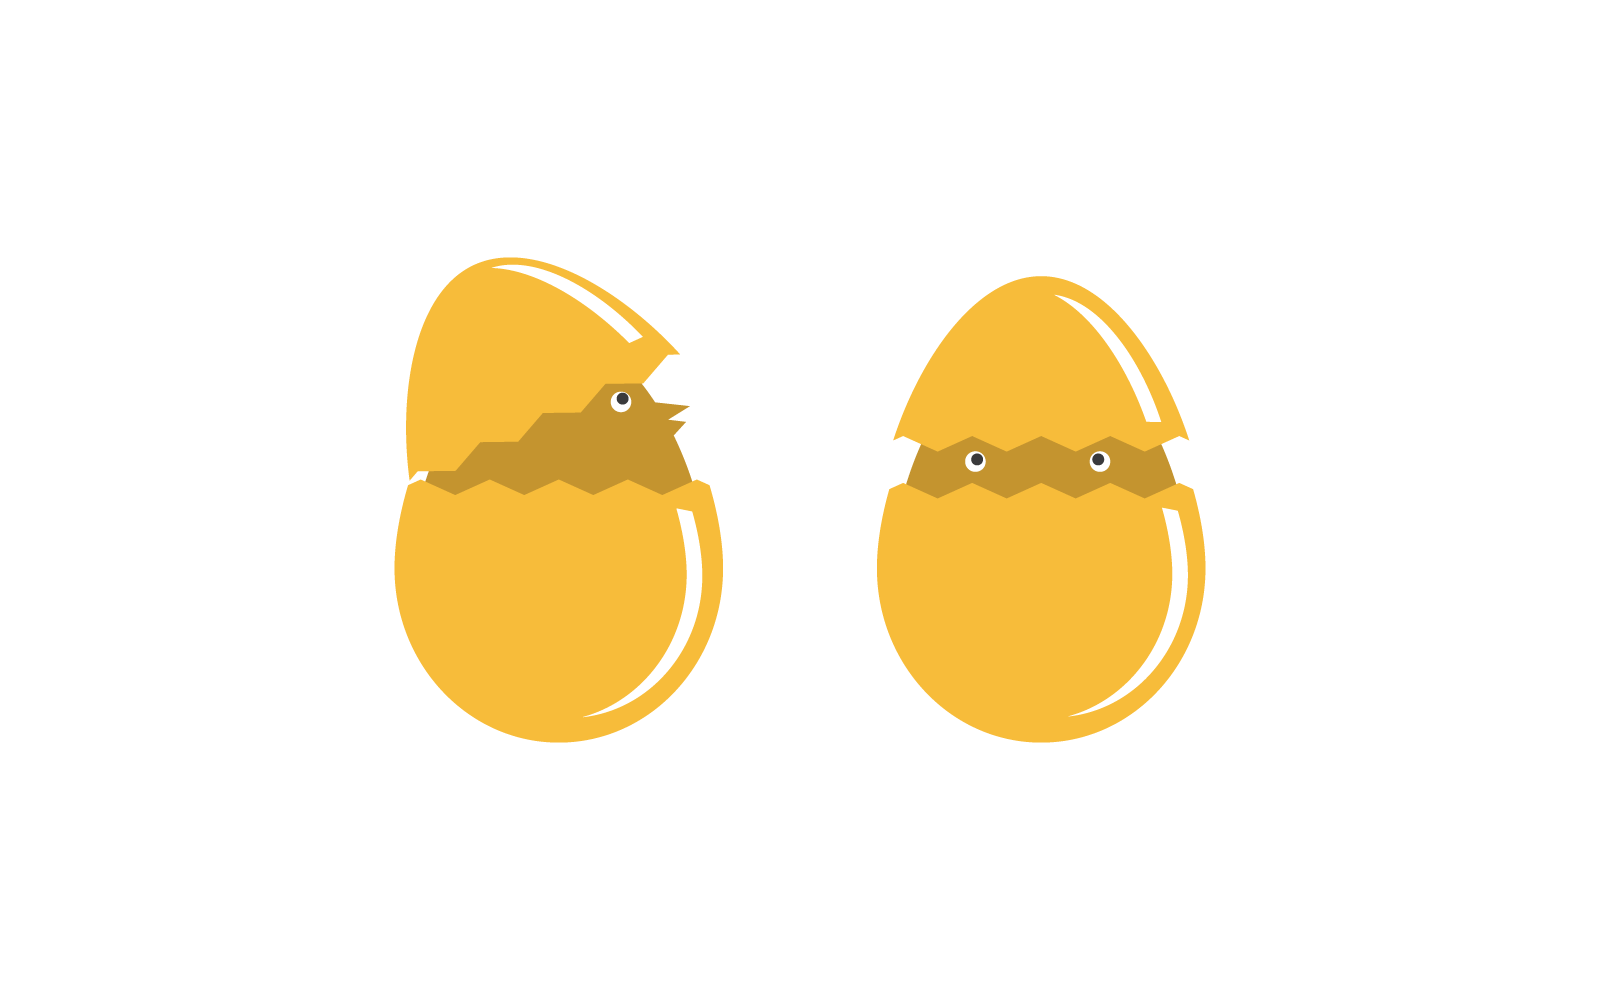 Egg cartoon illustration logo vector flat design